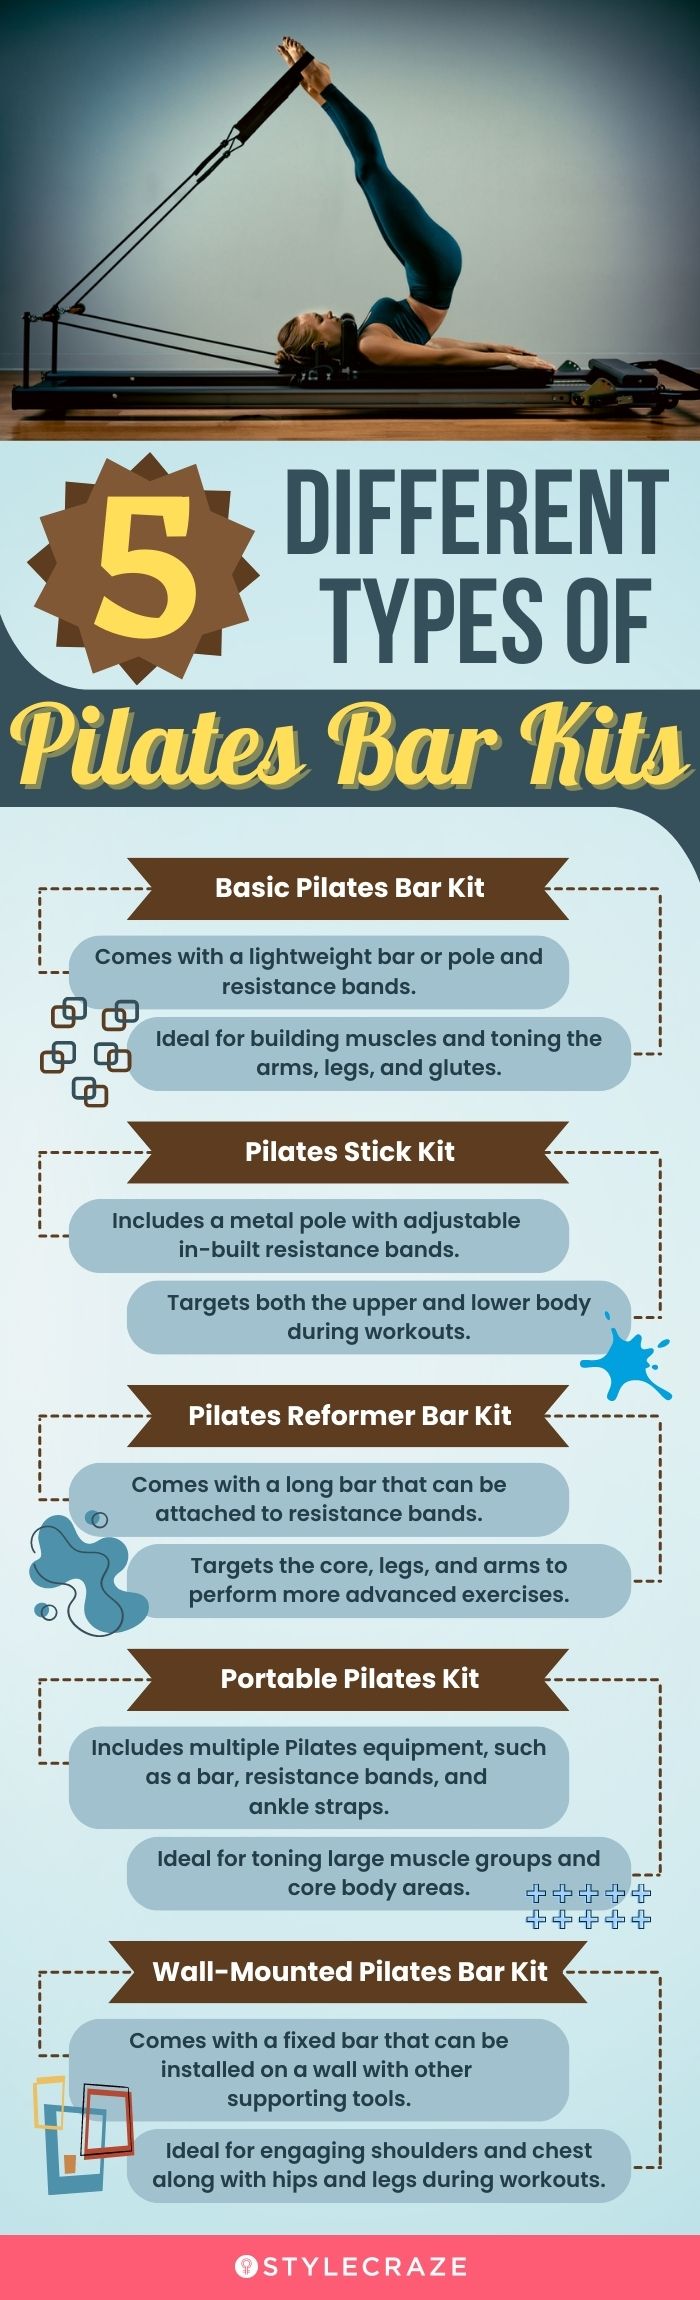 Gaiam pilates bar kit